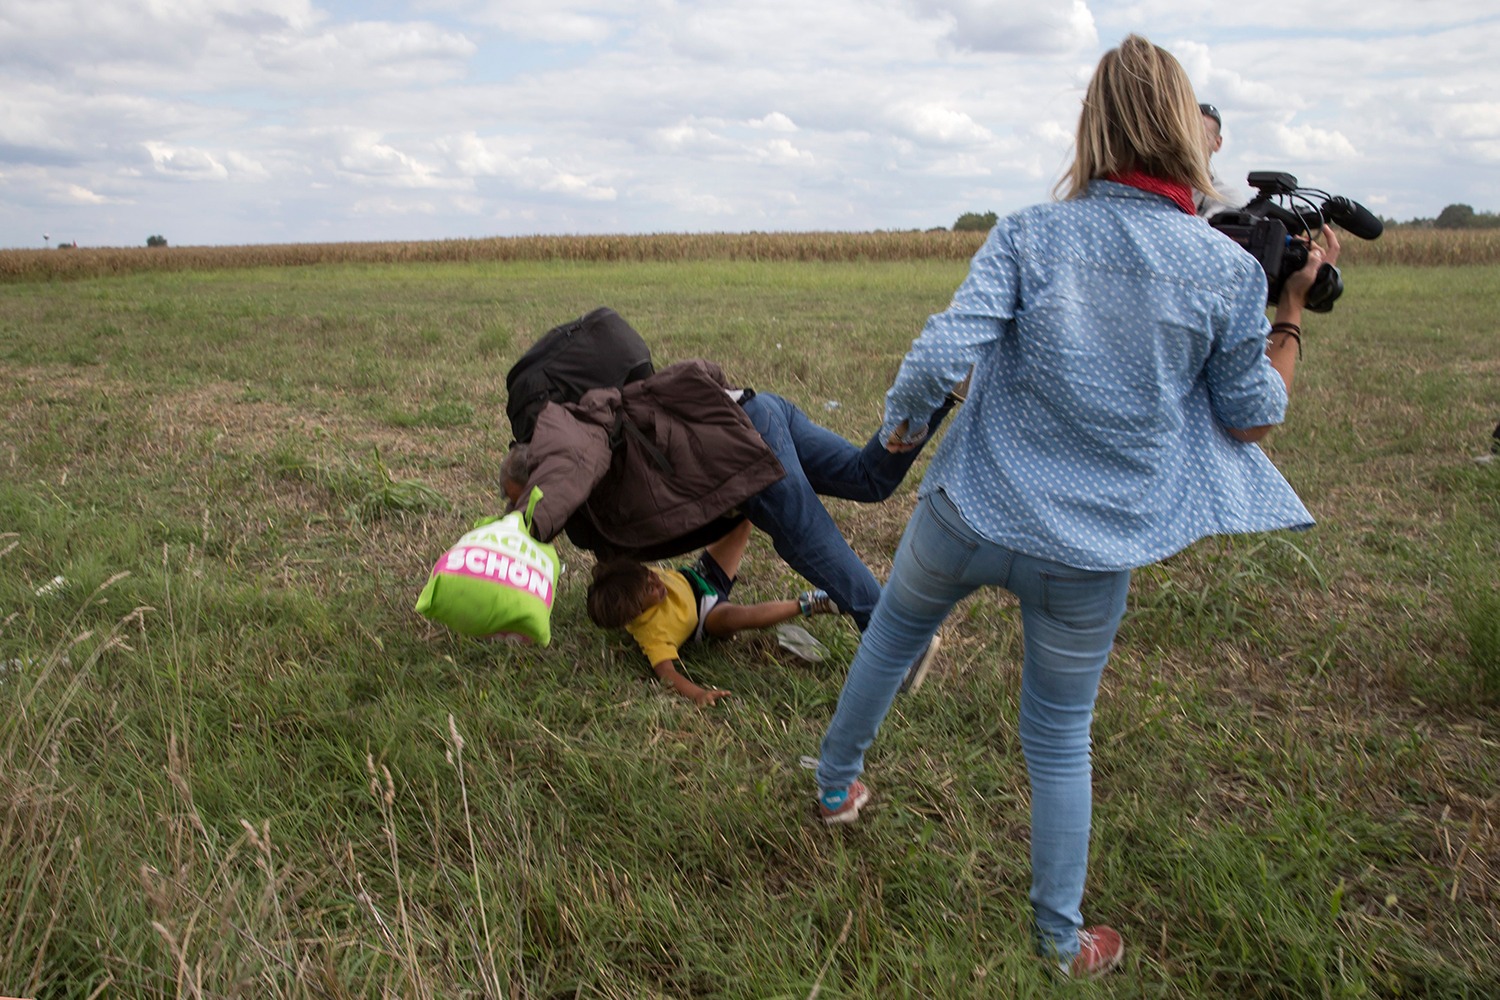 Una periodista mete la zancadilla a un refugiado y su niño y filma la caída. #7dias